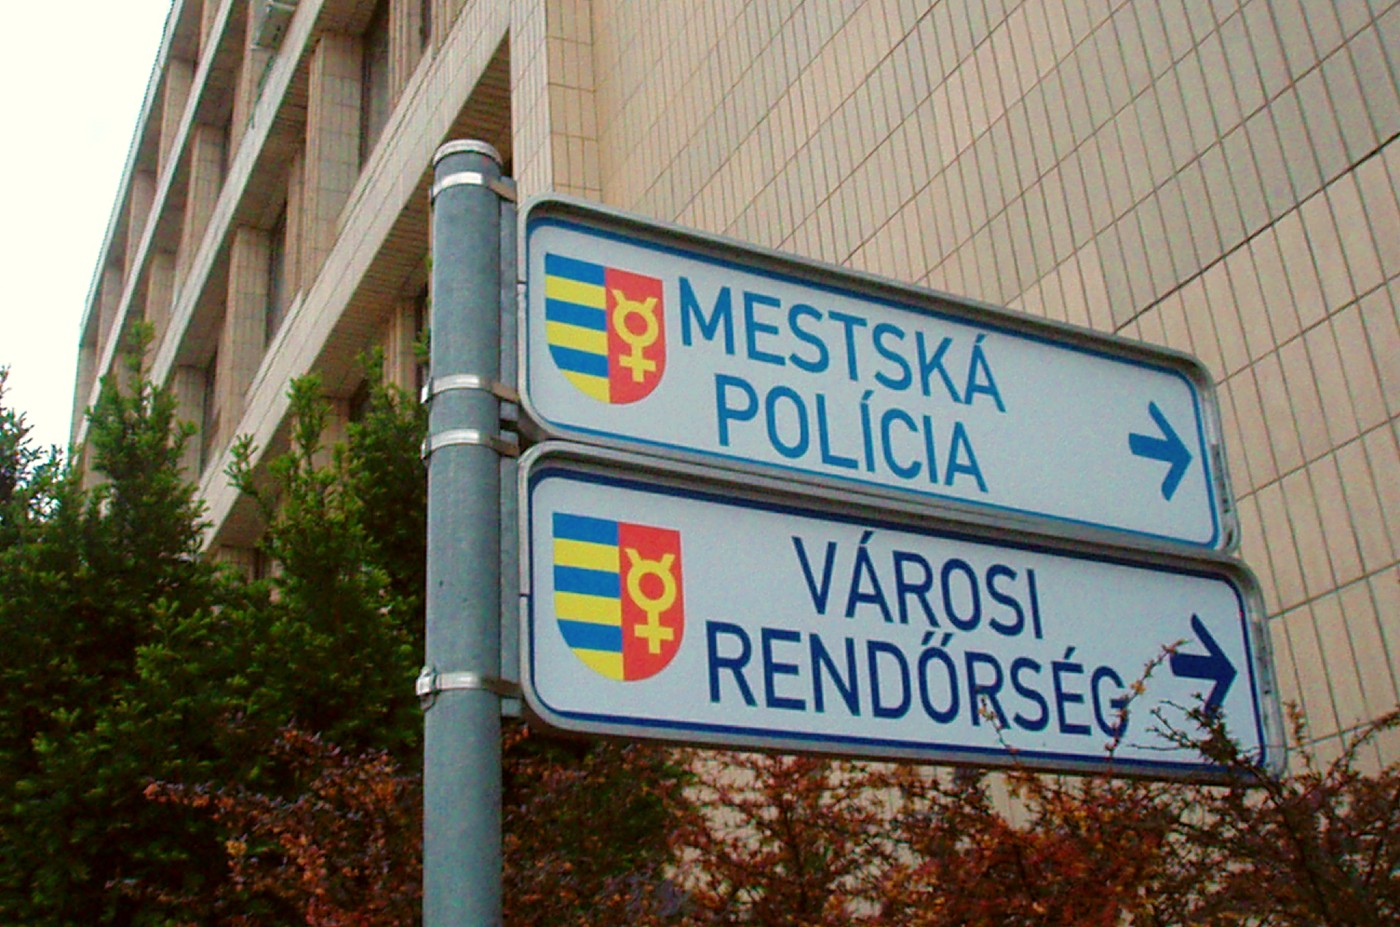 Városi Rendőrség,Rendőrség,Parkolás,Dunaszerdahely